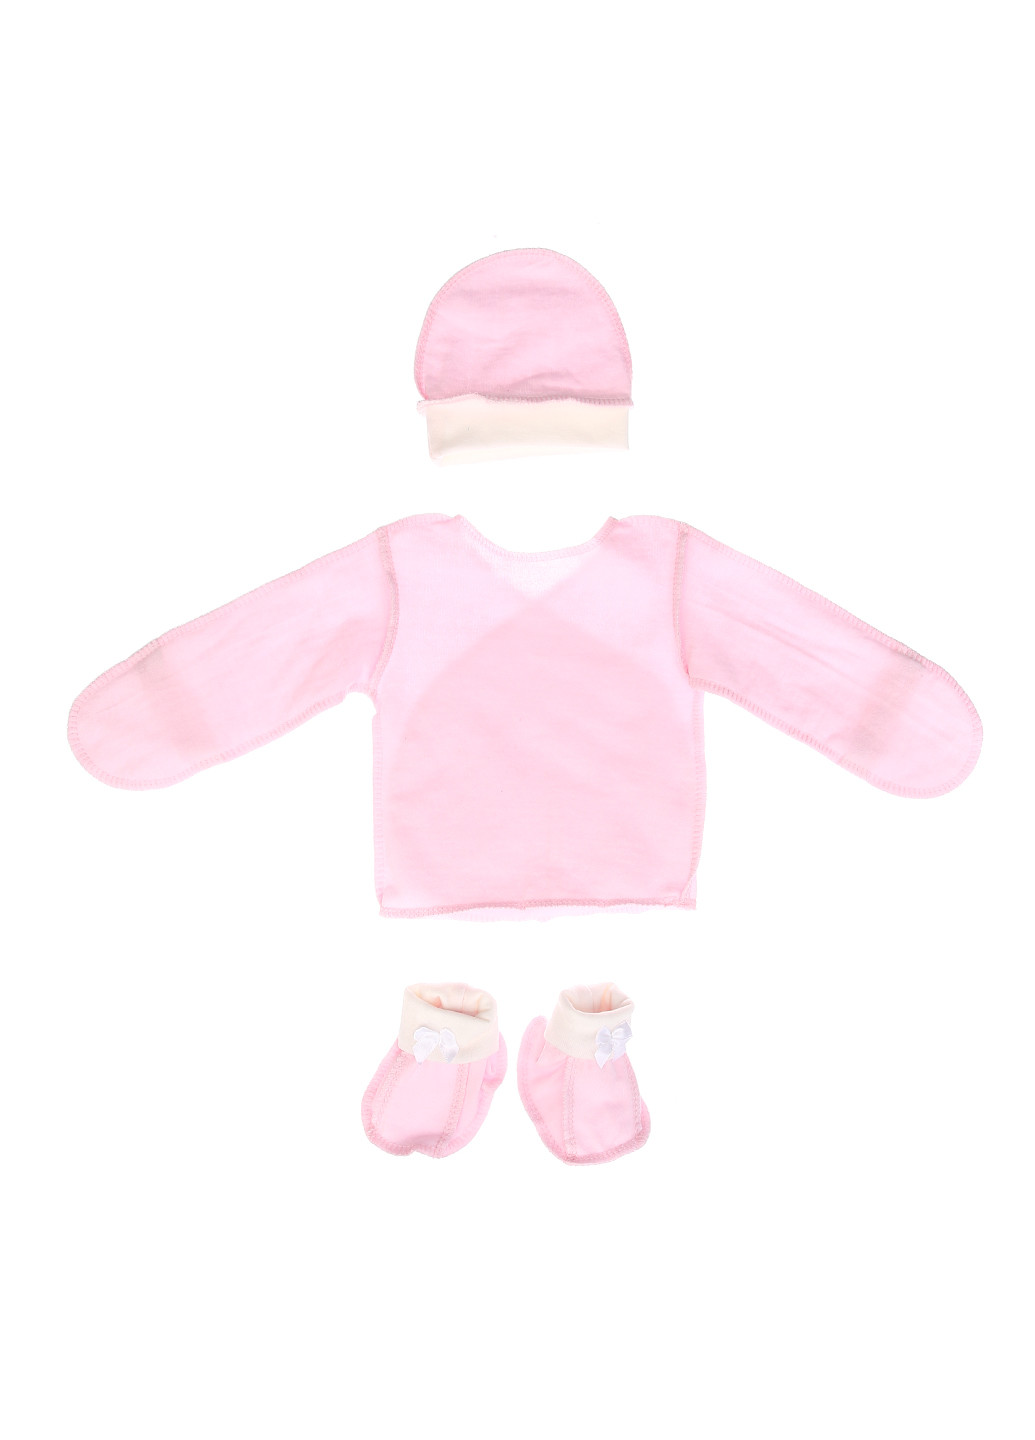 Светло-розовый демисезонный комплект (распашонка, пинетки, шапка) Трикомир